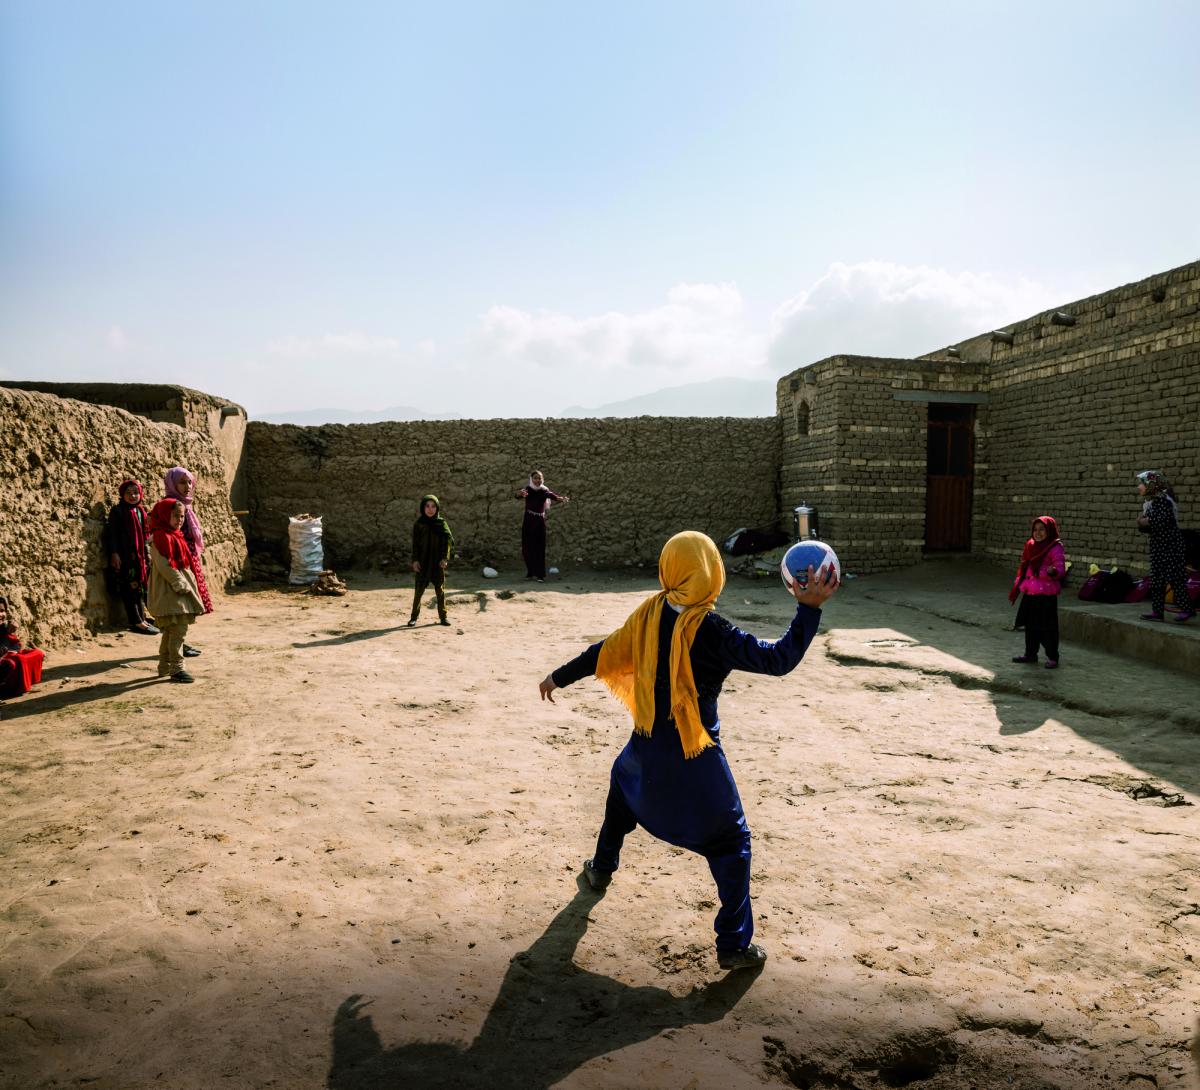 Alcune bambine giocano in uno Spazio a Misura di Bambino, un luogo sicuro e inclusivo dove imparare, giocare ed essere protetti realizzato da Save the Children in un campo sfollati in Afghanistan.